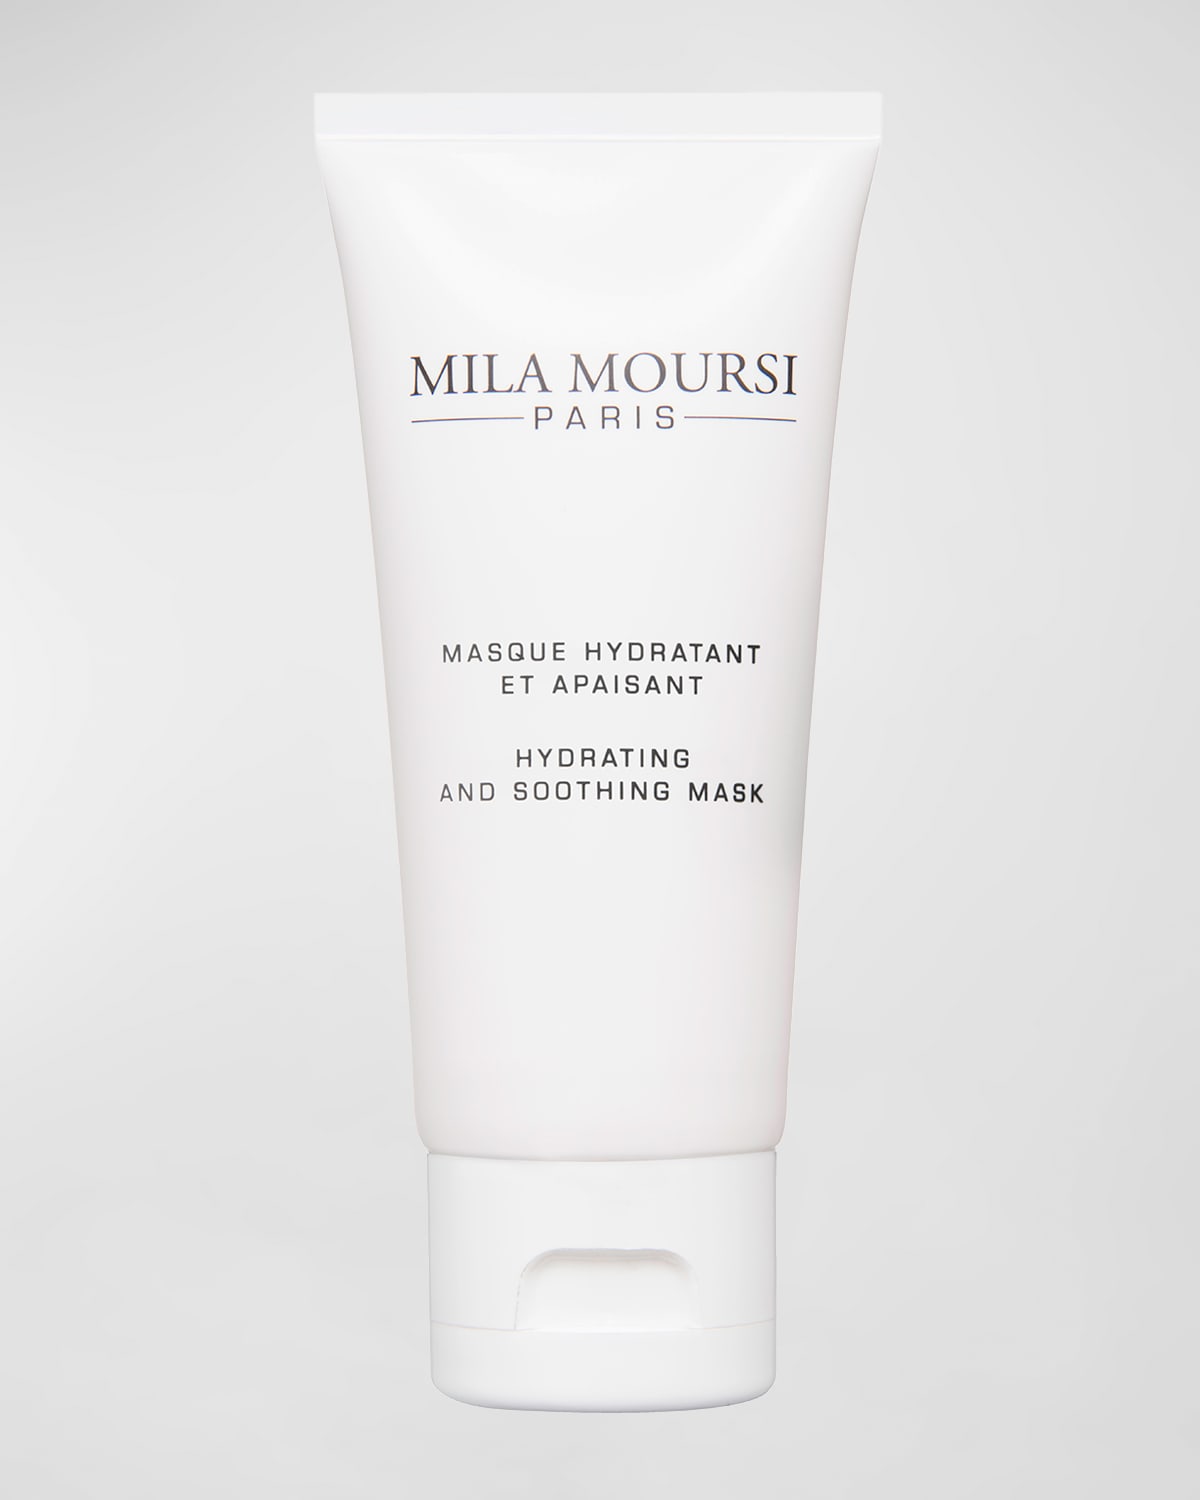 Mila Moursi Hydrating & Soothing Mask, 1.7 oz.